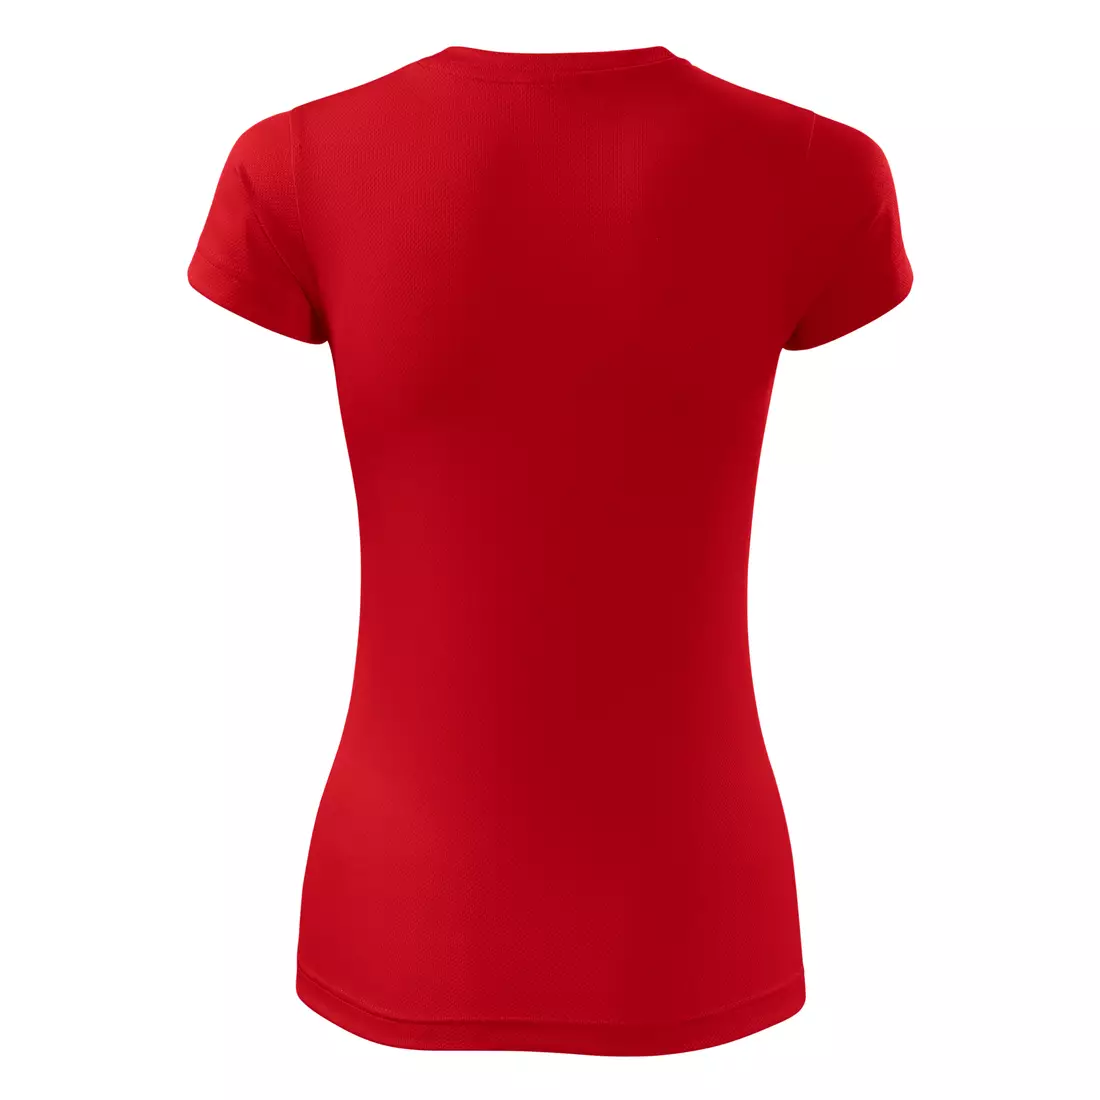 MALFINI FANTASY - damska koszulka sportowa 100% poliester, czerwony 1400712-140